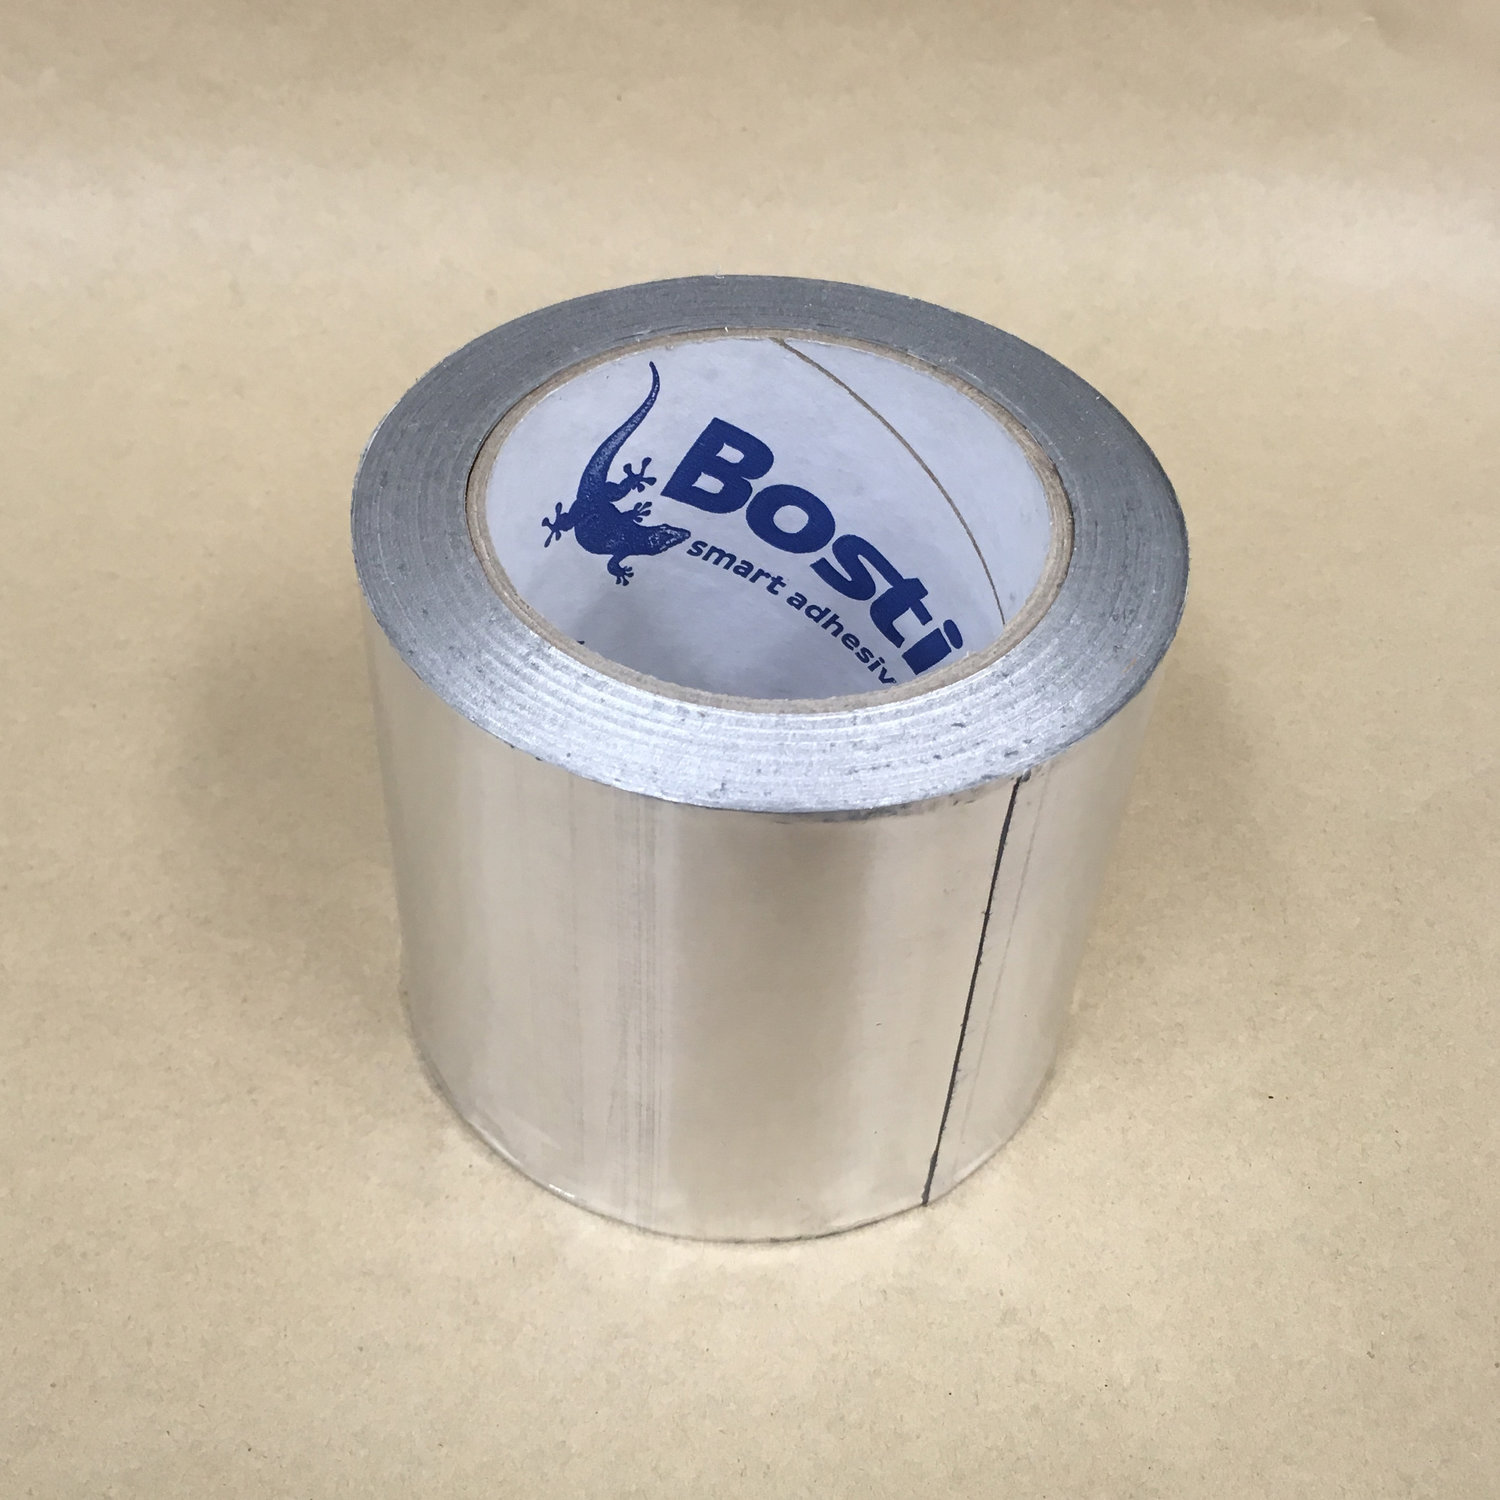 Bostik Self-adhesive Foil Tape